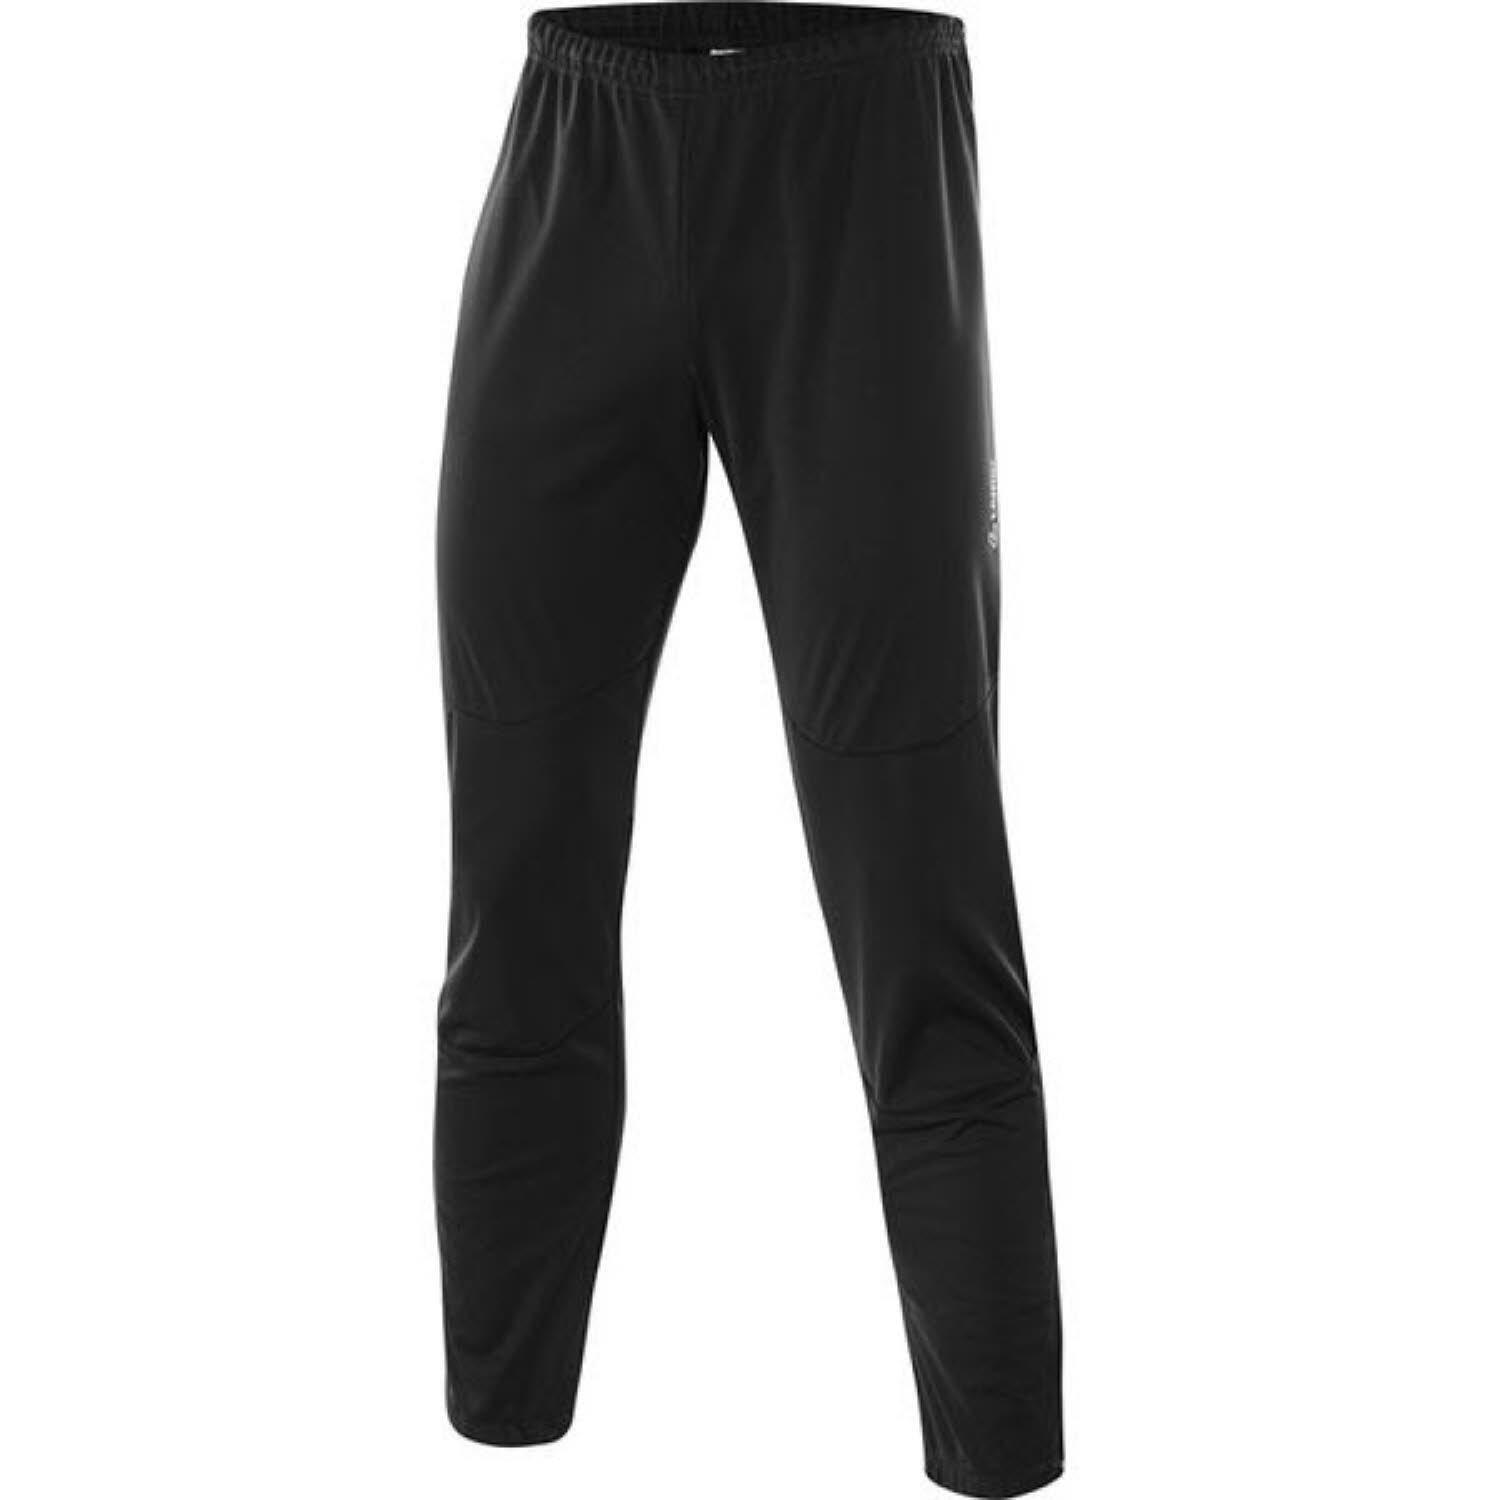 Брюки спортивные Loeffler Evo WS Light, черный брюки спортивные черный